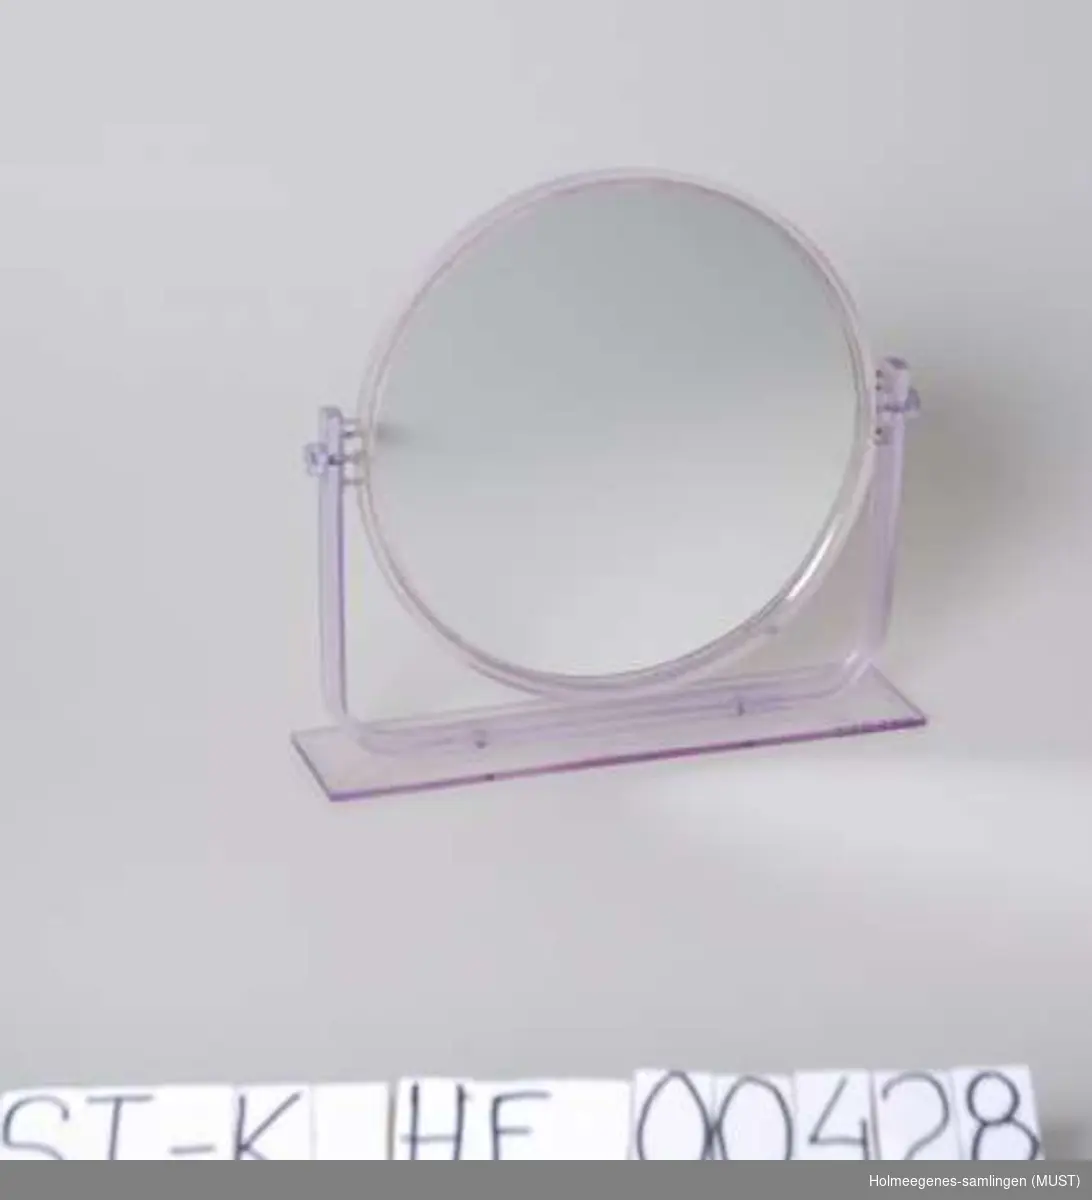 Rundt speil med ramme og stativ av transparent, lys lilla plast. Speilet kan snurres rundt i rammen, og det er speil på begge sidene.